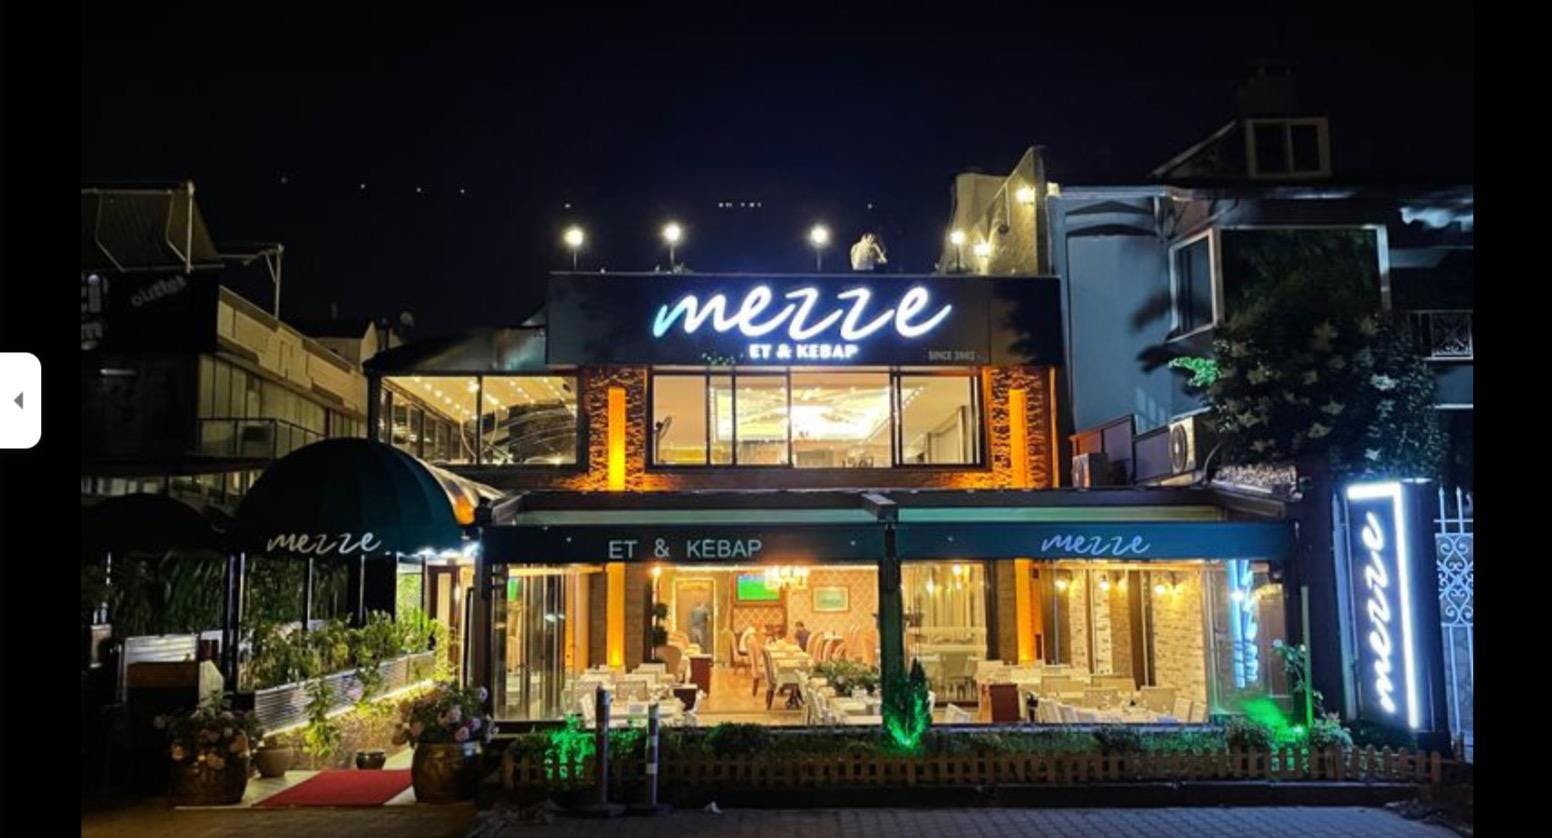 Photo of restaurant Mezze Et & Kebap in İdealtepe, Istanbul